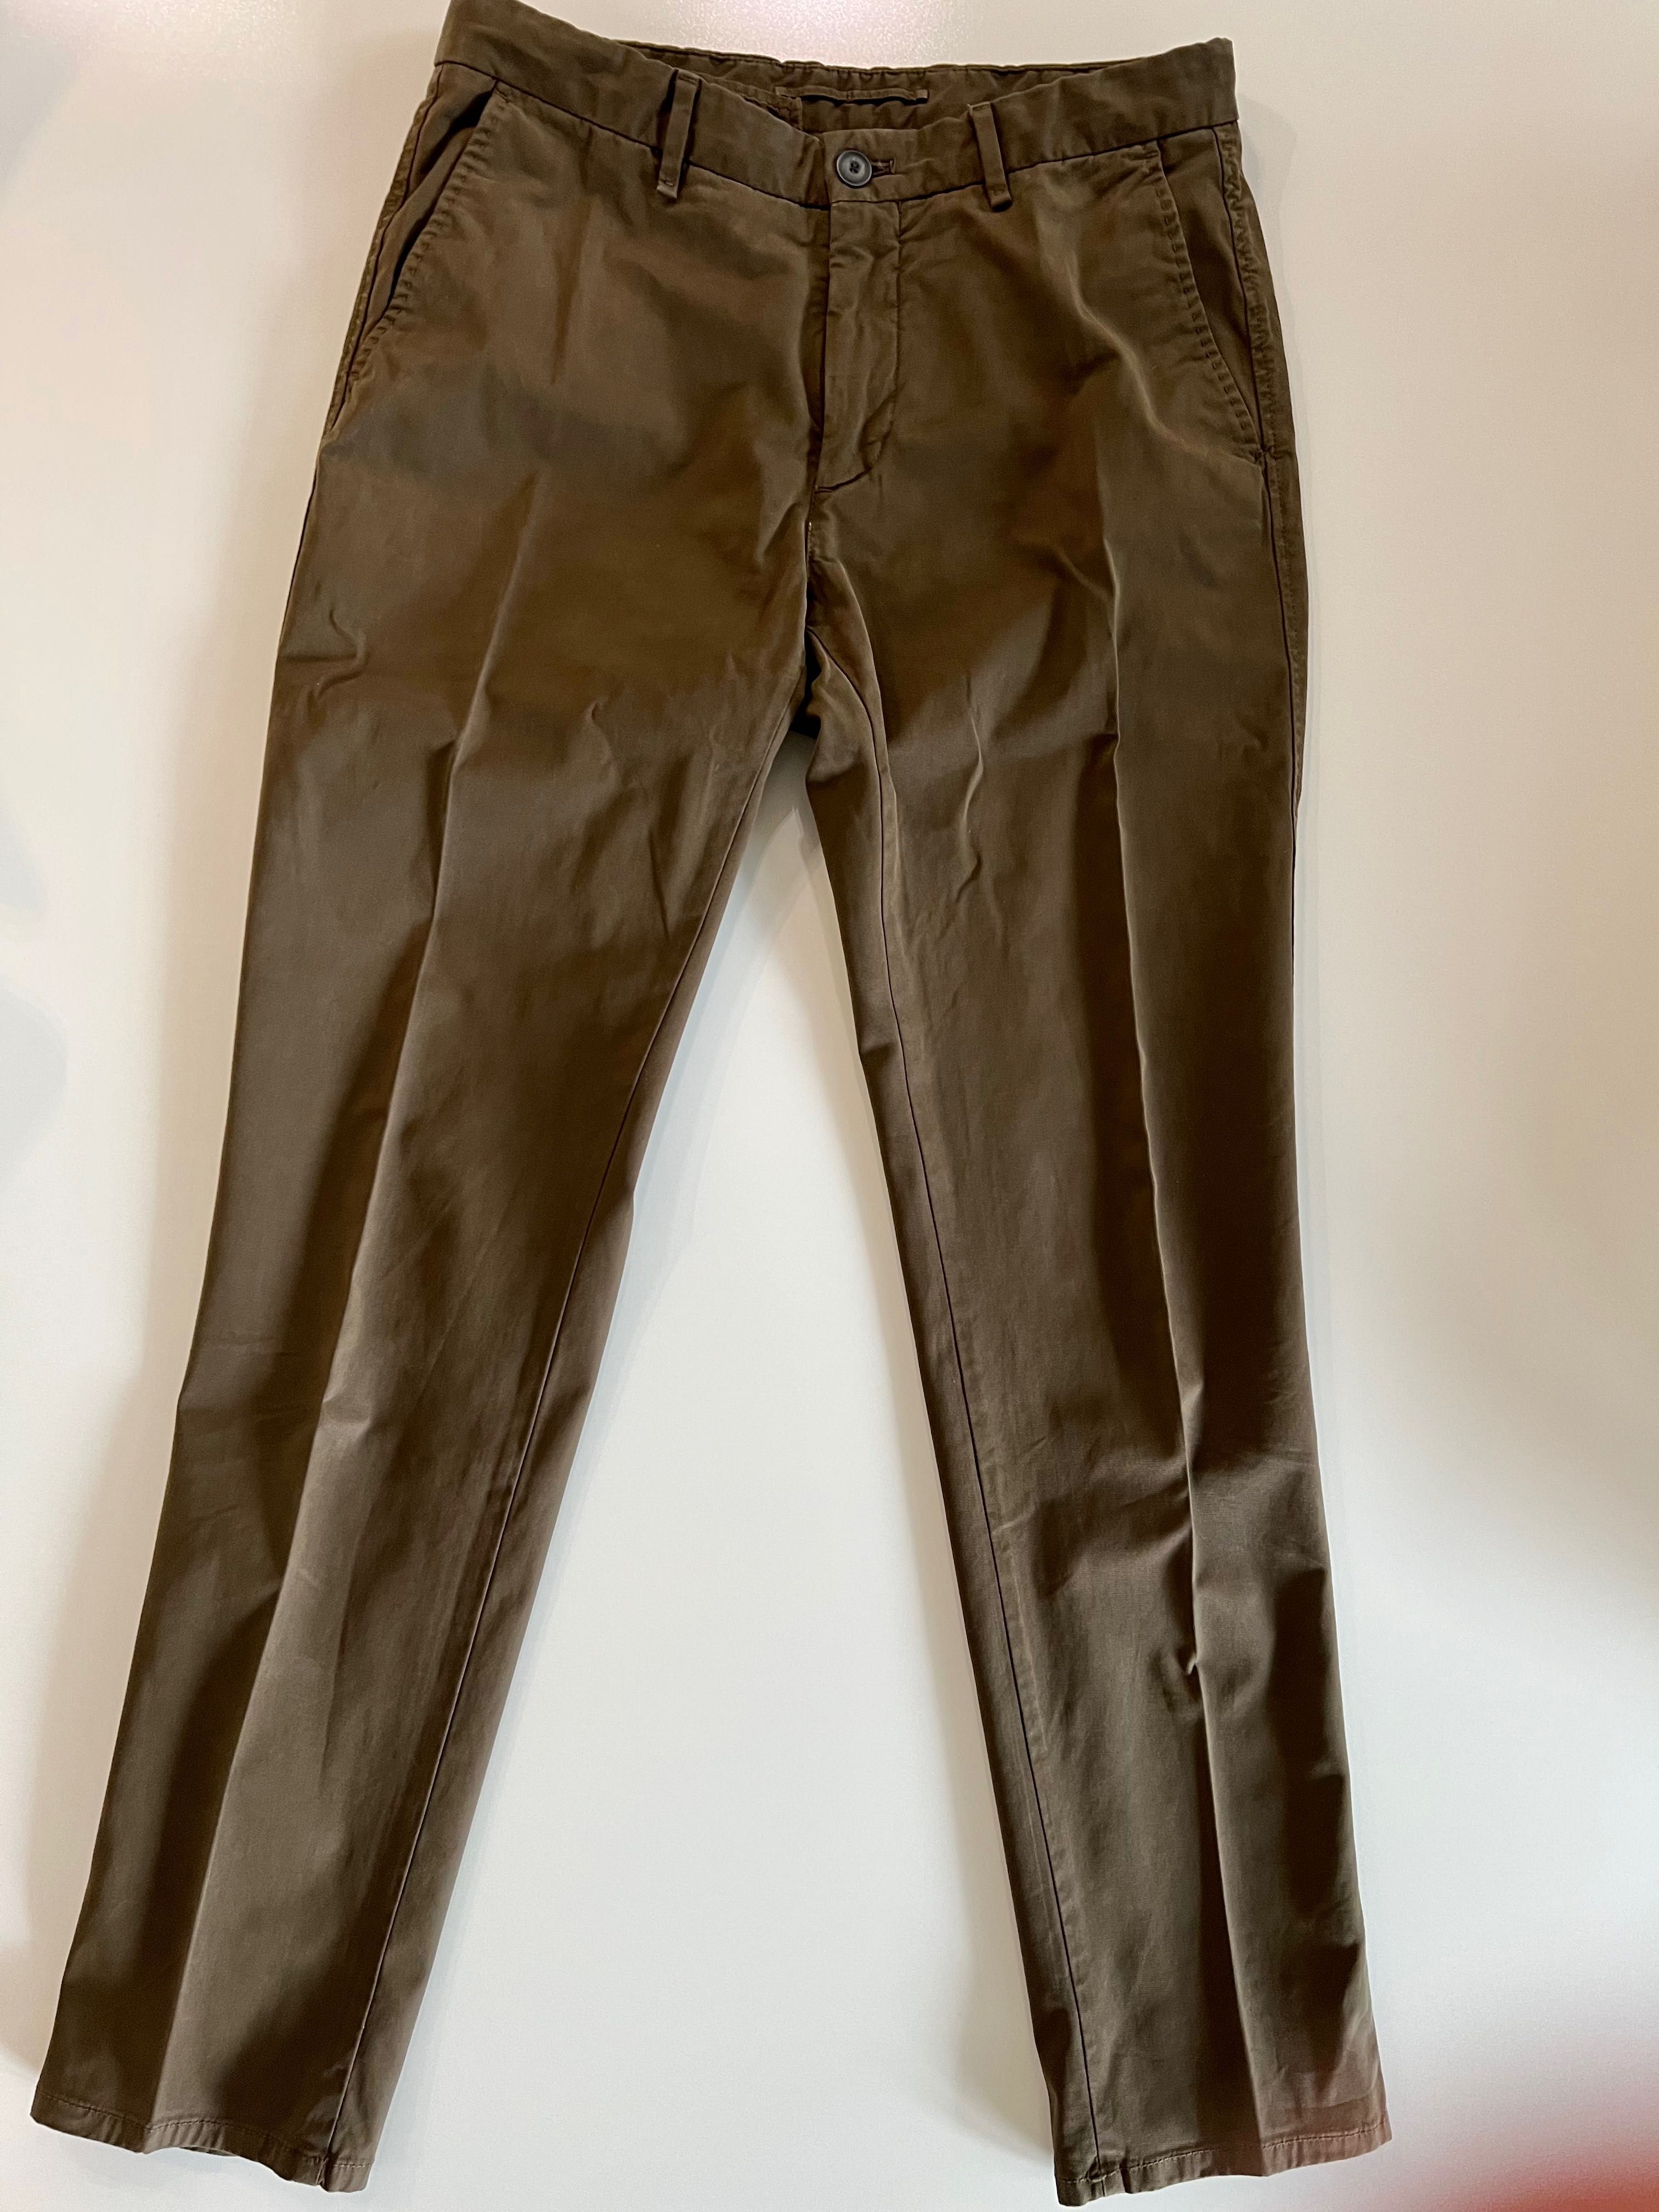 Spodnie chinos Massimo Dutti w kolorze brązowym i rozmiarze 38